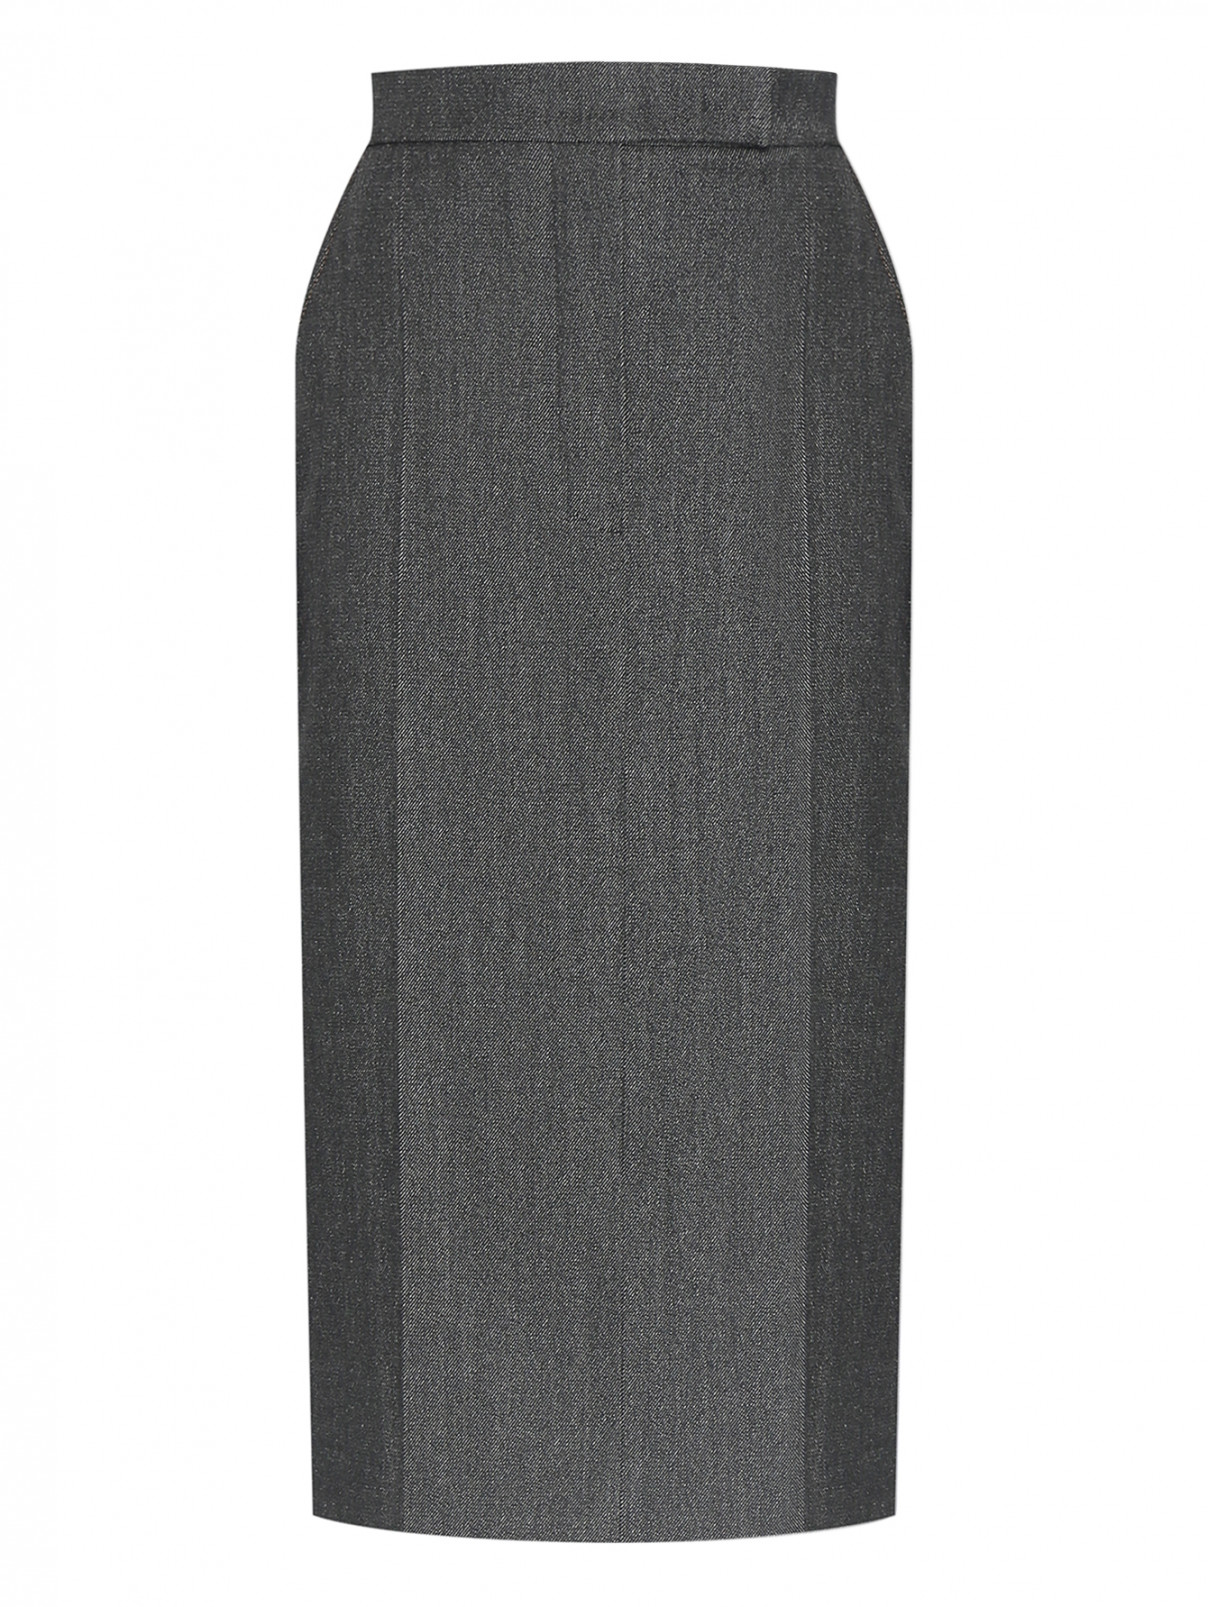 Юбка с карманами и разрезом Max Mara  –  Общий вид  – Цвет:  Серый